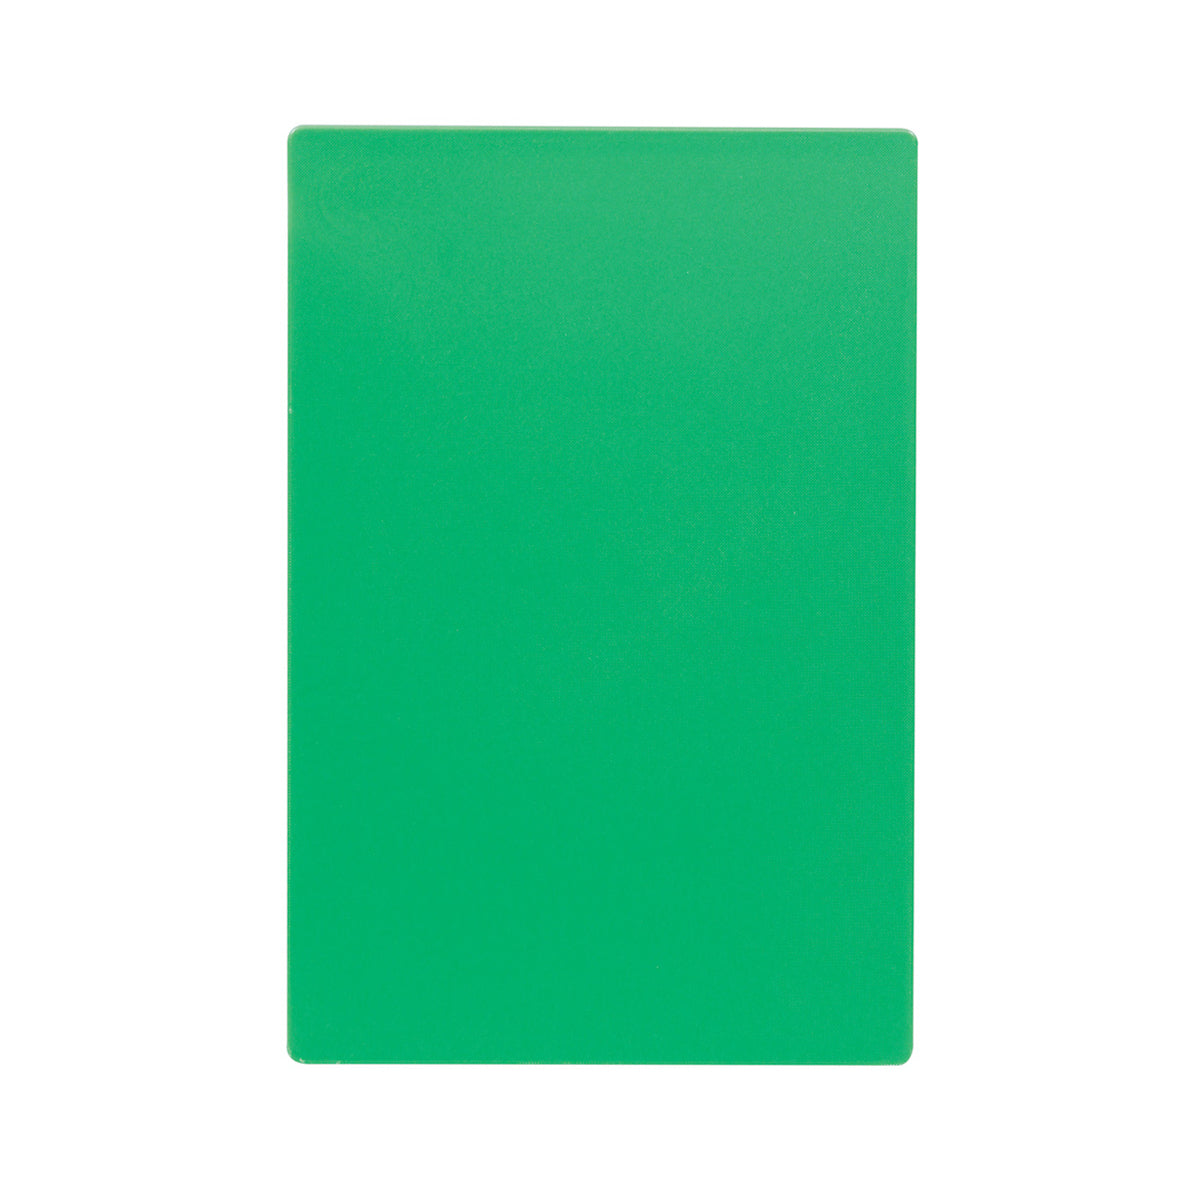 Tabla para Picar de Plástico Verde de 46 x 61 cm NFS